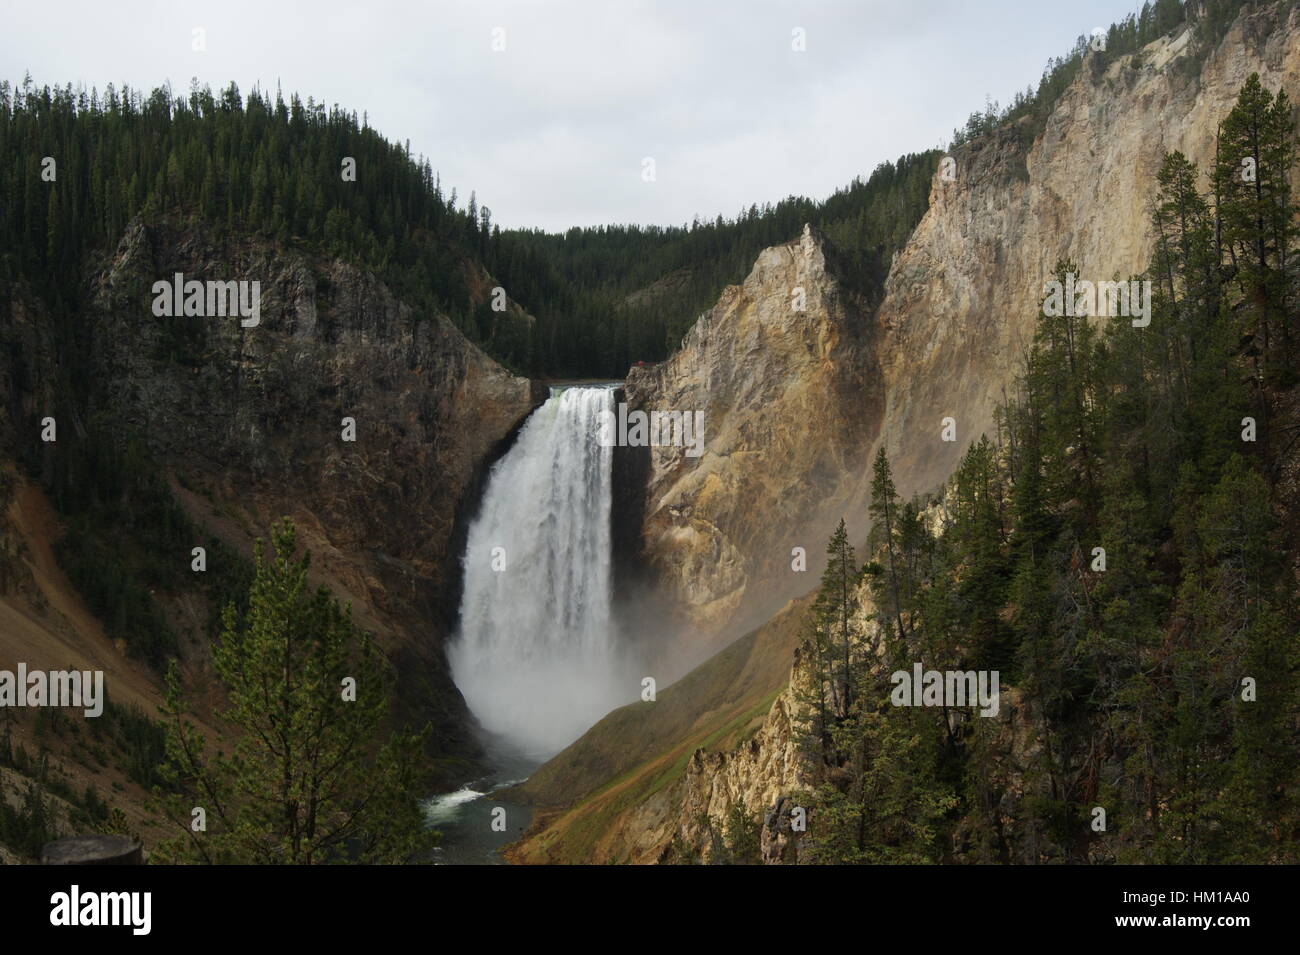 Yellowstone water fall Stock Photo